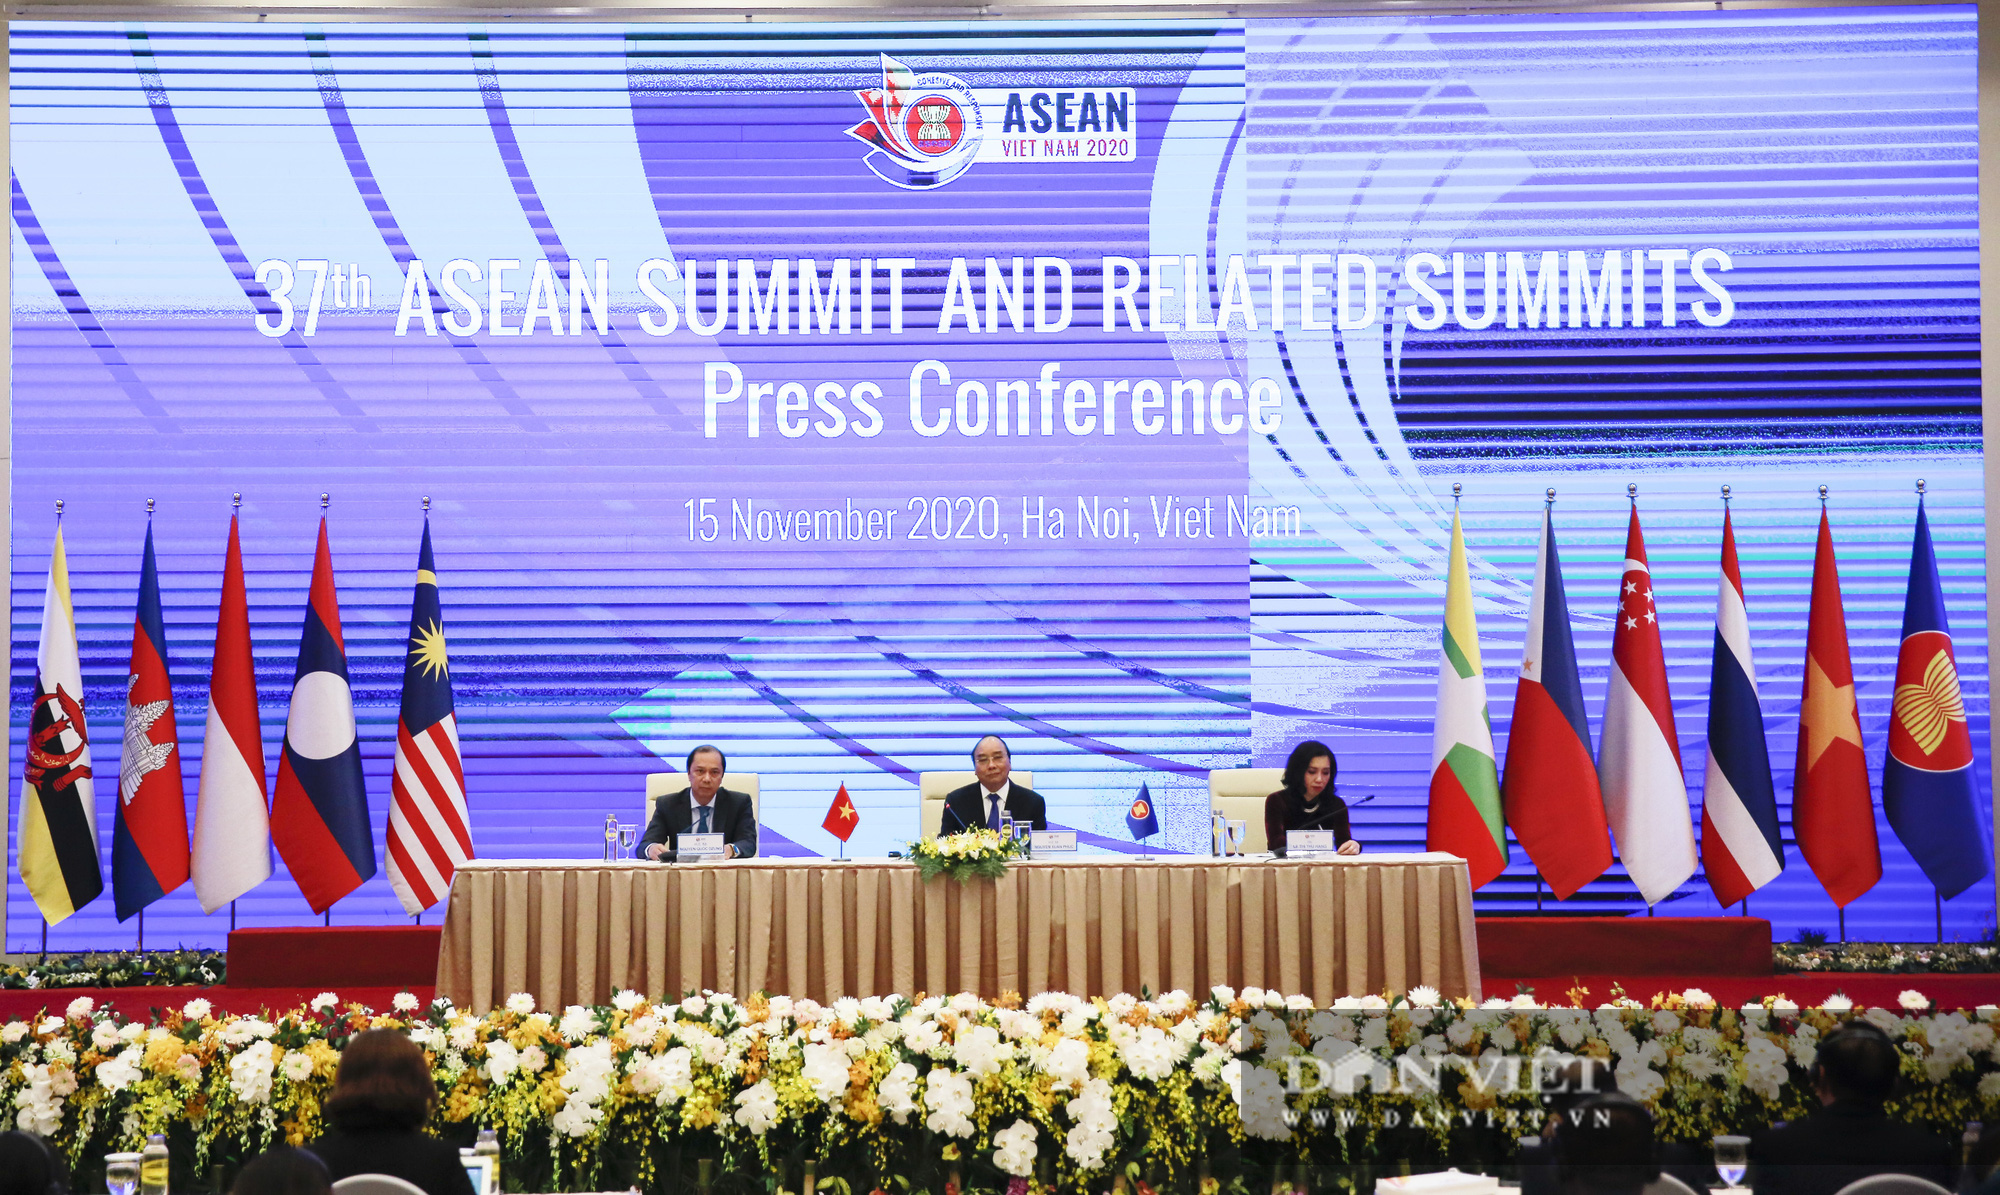 Bế mạc Hội nghị Cấp cao ASEAN 37 và chuyển giao vai trò Chủ tịch ASEAN - Ảnh 10.